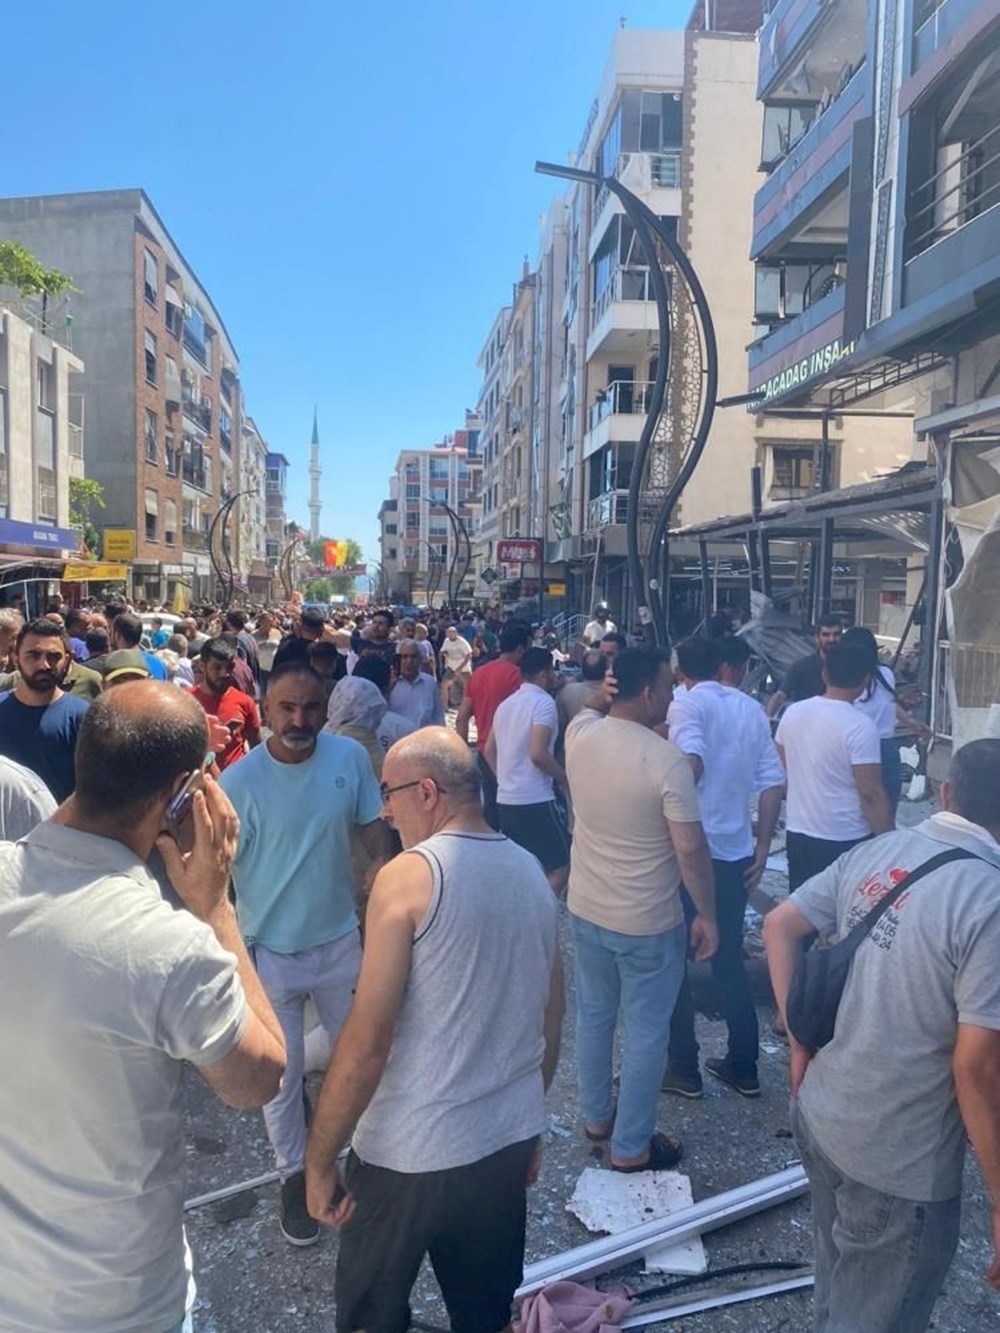 SON DAKİKA HABERİ | İzmir Torbalı'da bir binada doğalgaz patlaması: 4 ölü, 20 yaralı - 10